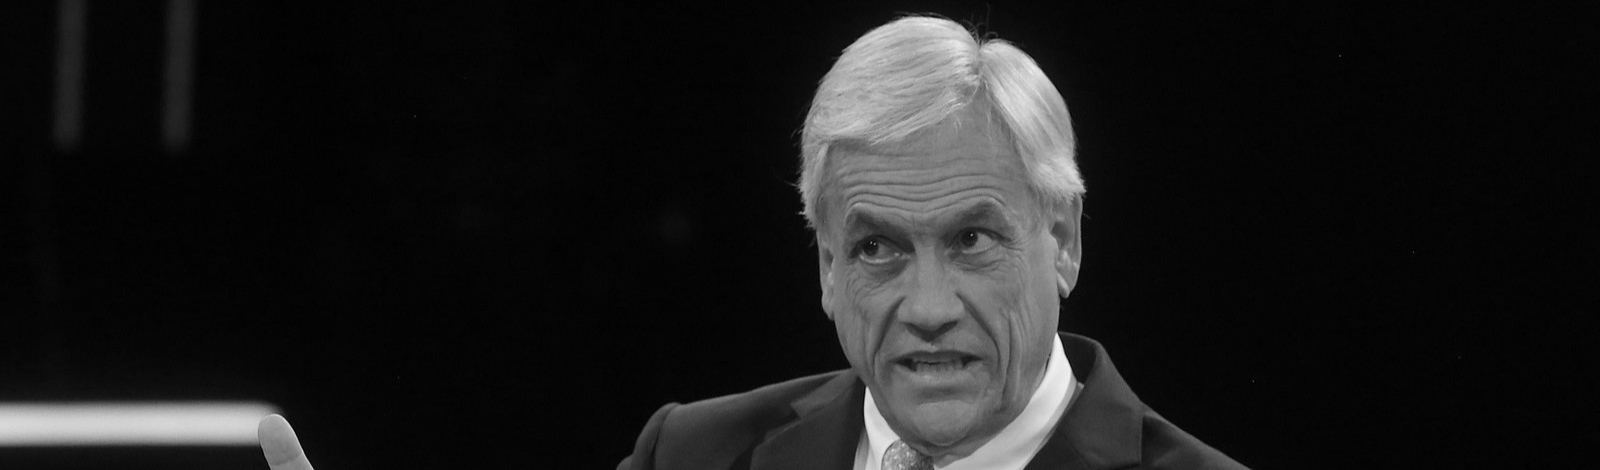 Repressão, mortes, tiro nos olhos: Piñera morre sem pagar por crimes contra povo chileno